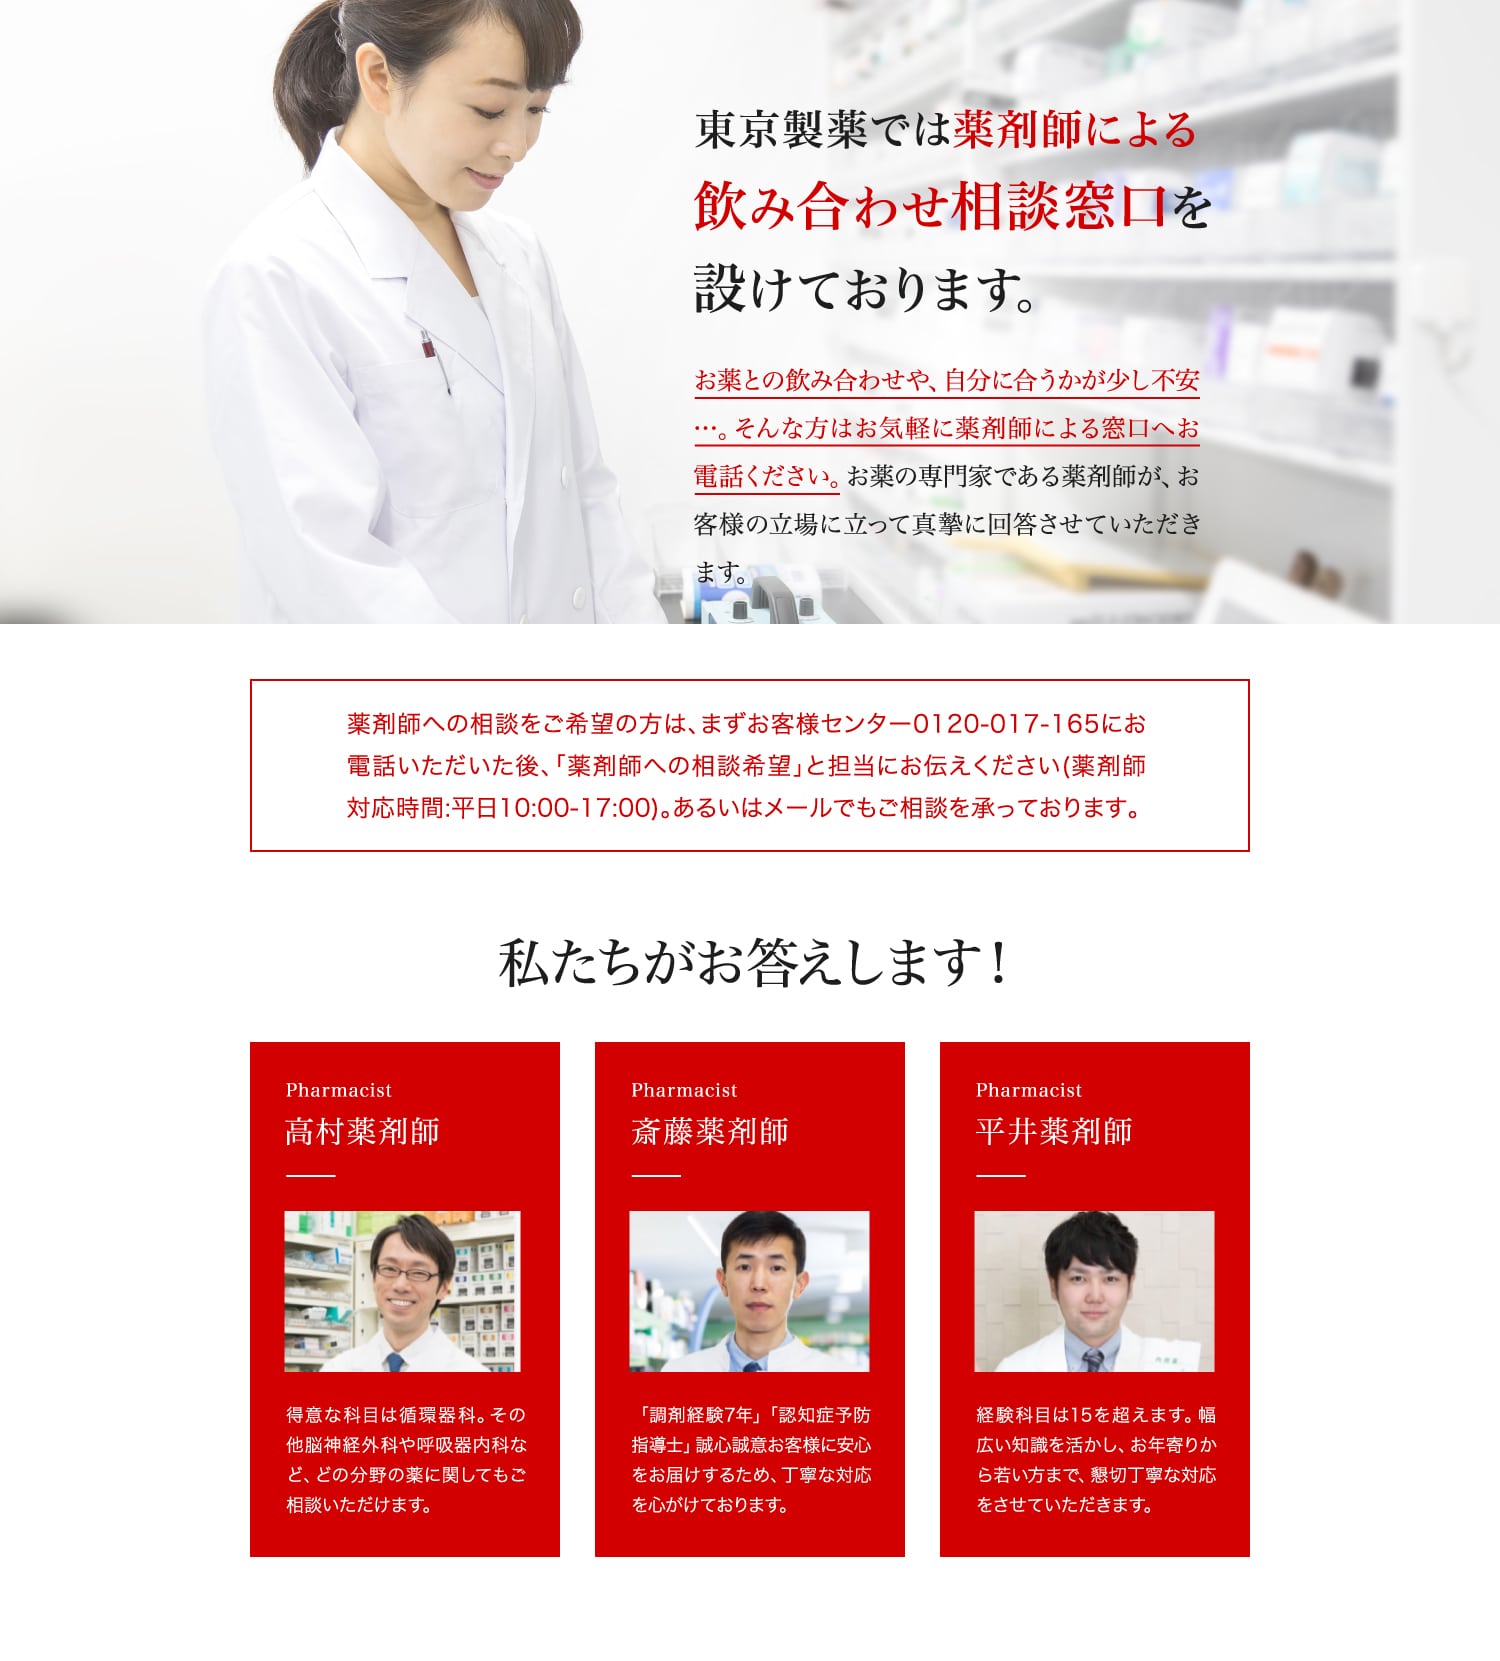 ALTIBLOCK　東京製薬では薬剤師による飲み合わせ相談窓口を設けております。